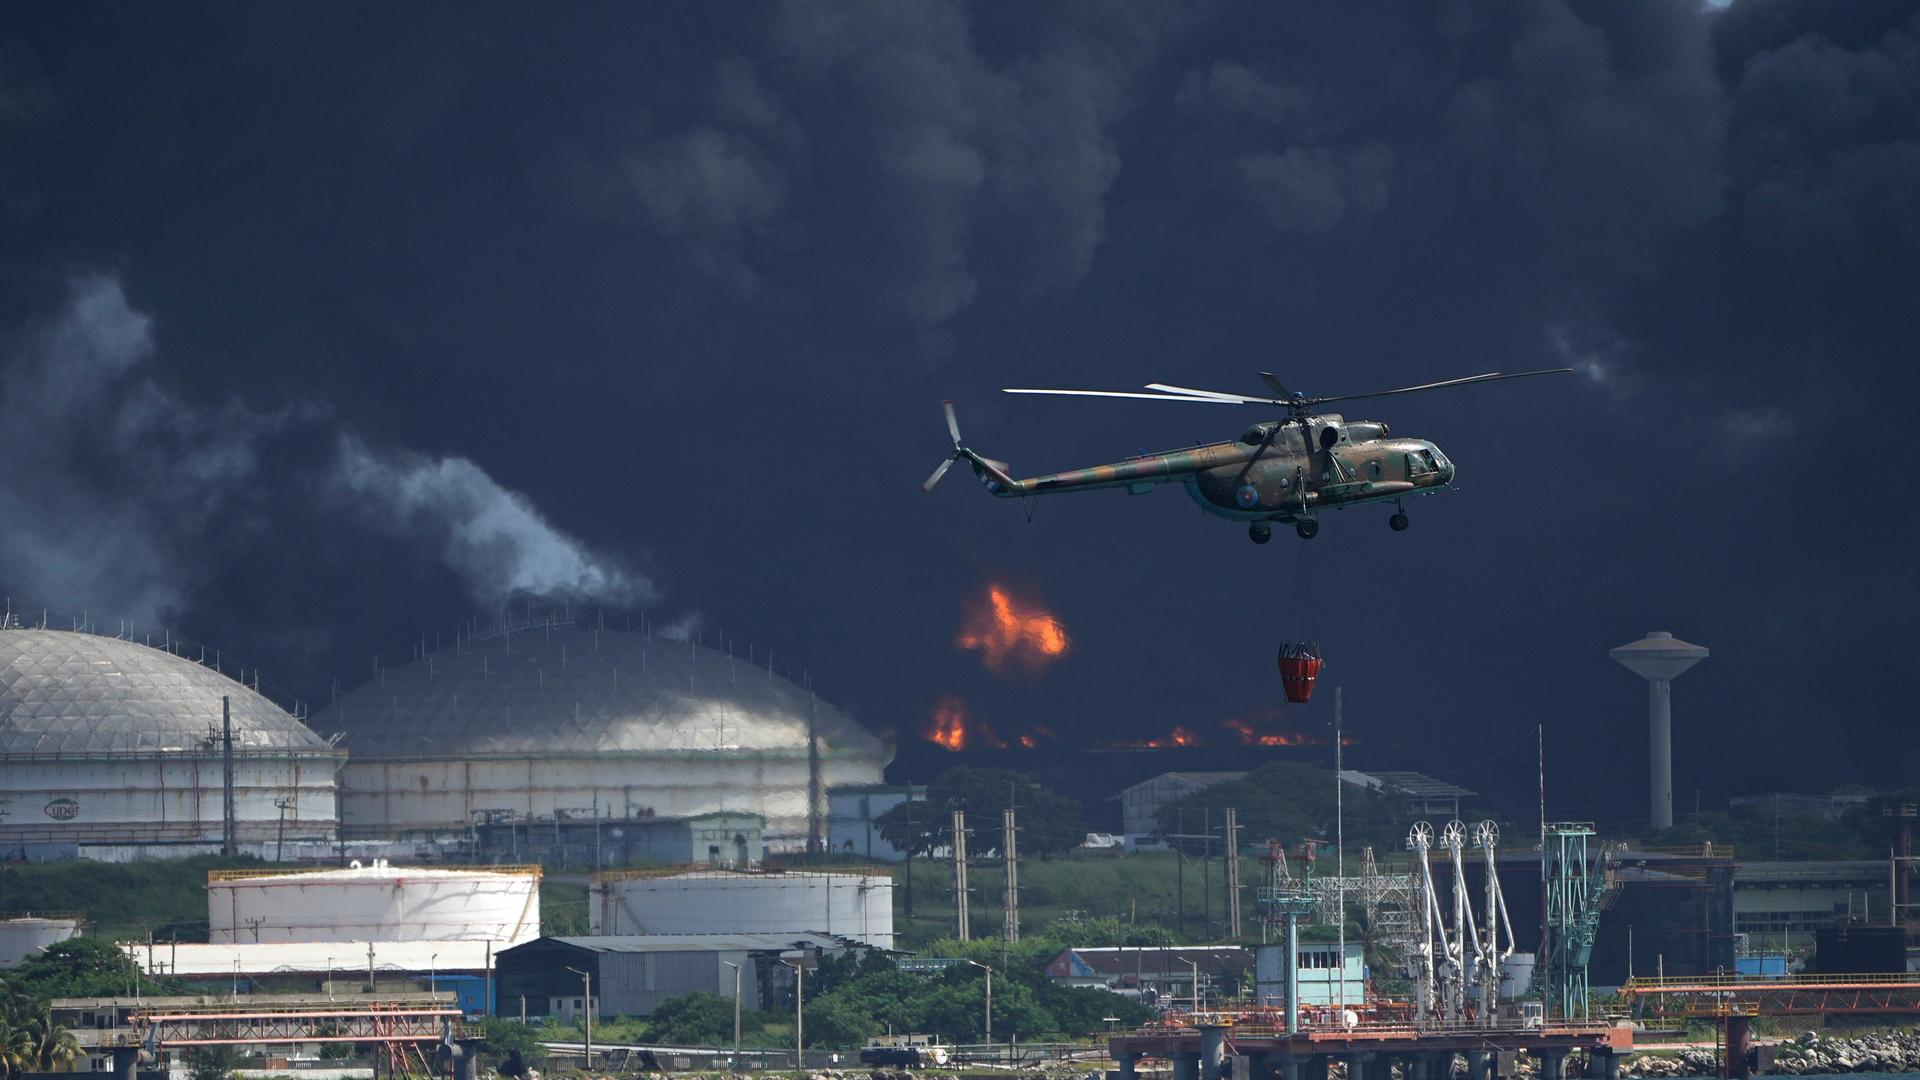 Ein mit Wasser beladener Hubschrauber fliegt über die Supertanker-Basis Matanzas, von der dunkler Rauch und Flammen aufsteigen, während Feuerwehrleute versuchen, den Brand zu löschen.